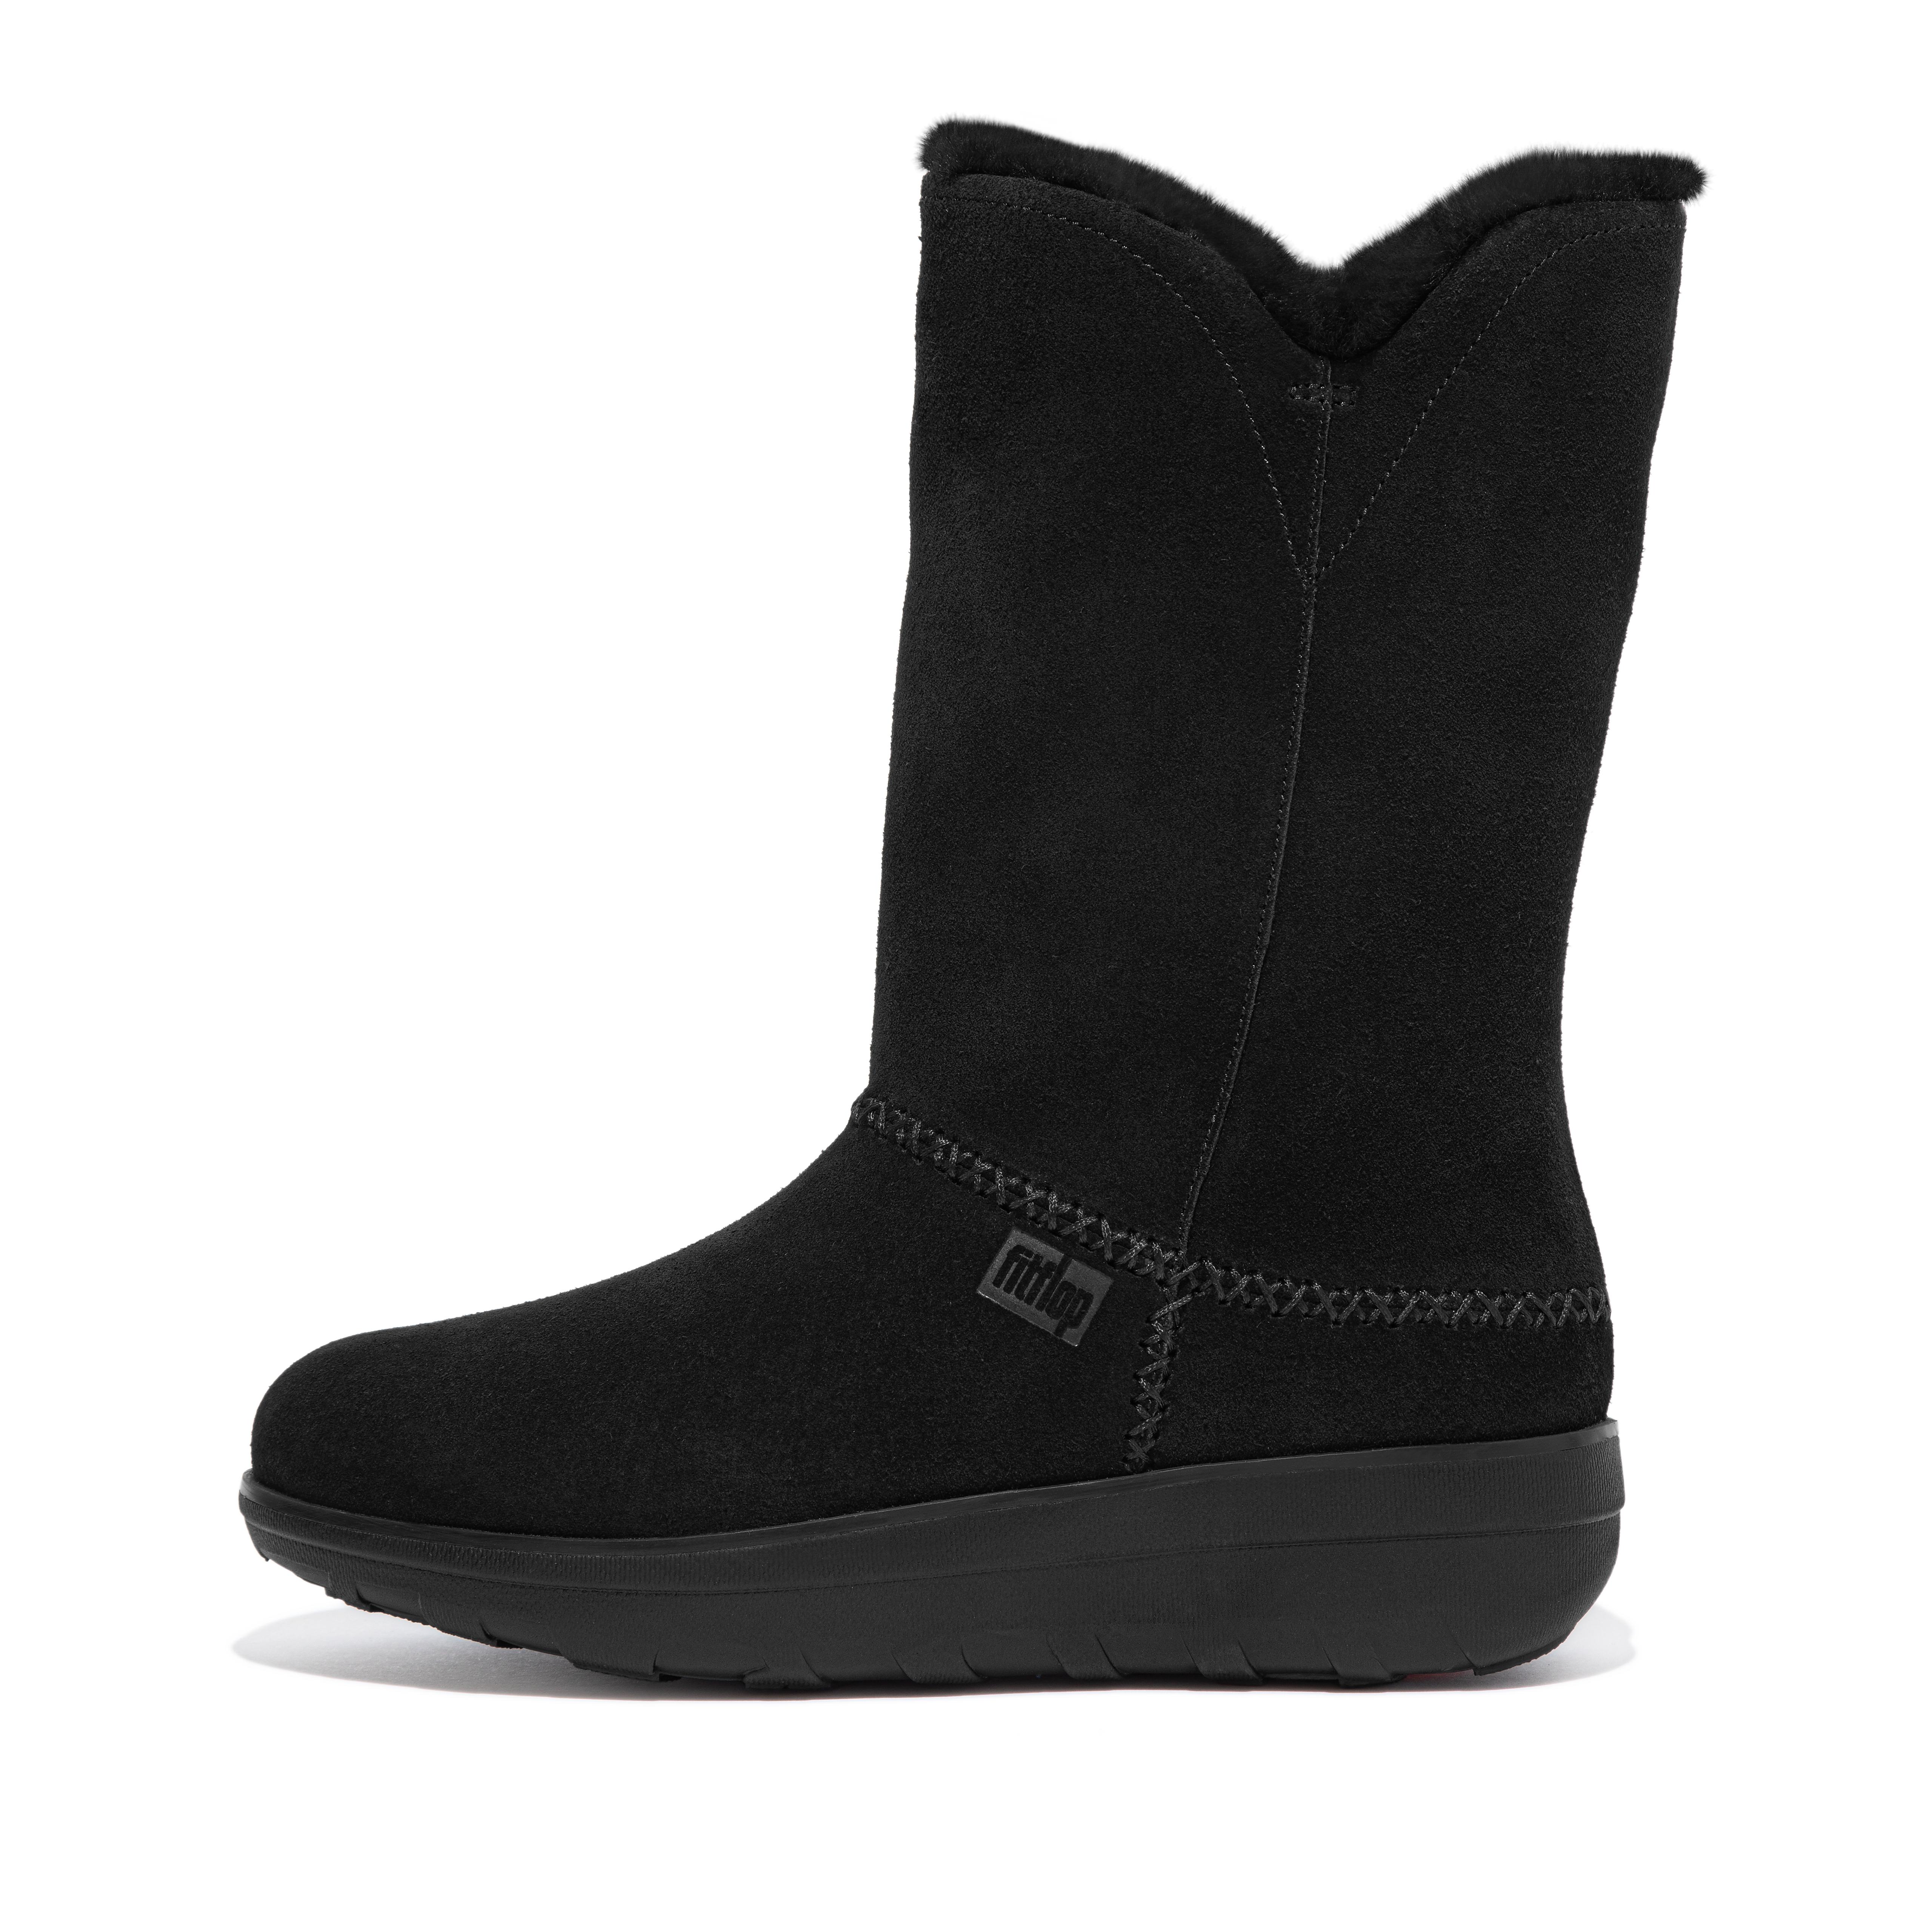 핏플랍 FitFlop MUKLUK Shearling-Lined Suede Calf Boots,All Black